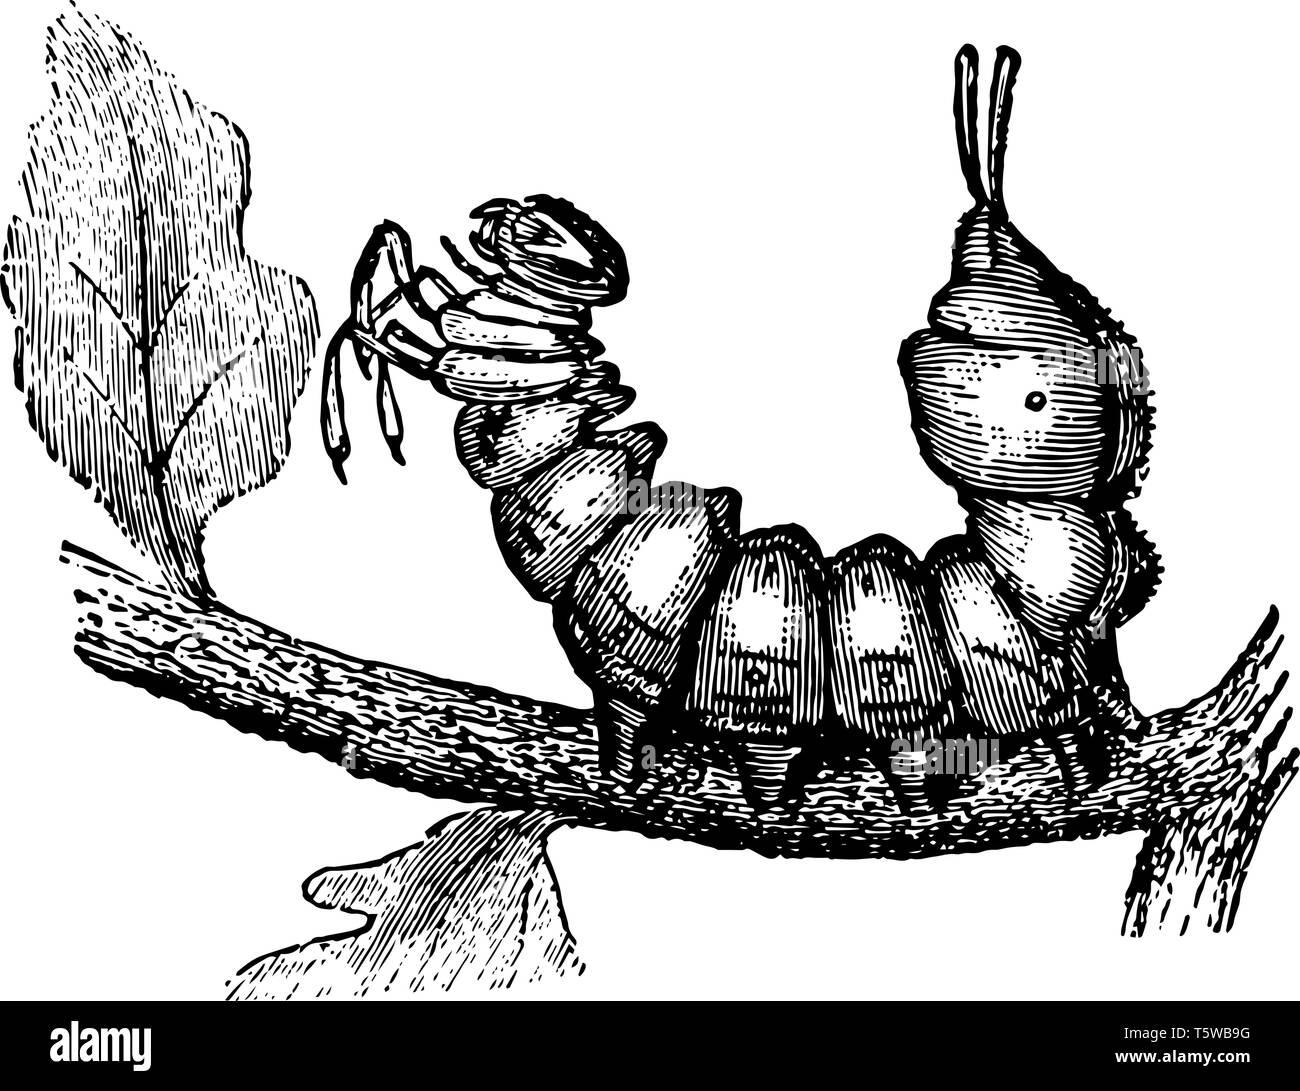 Larve de papillon de homard présente une apparence étrange vintage dessin ou gravure illustration. Illustration de Vecteur